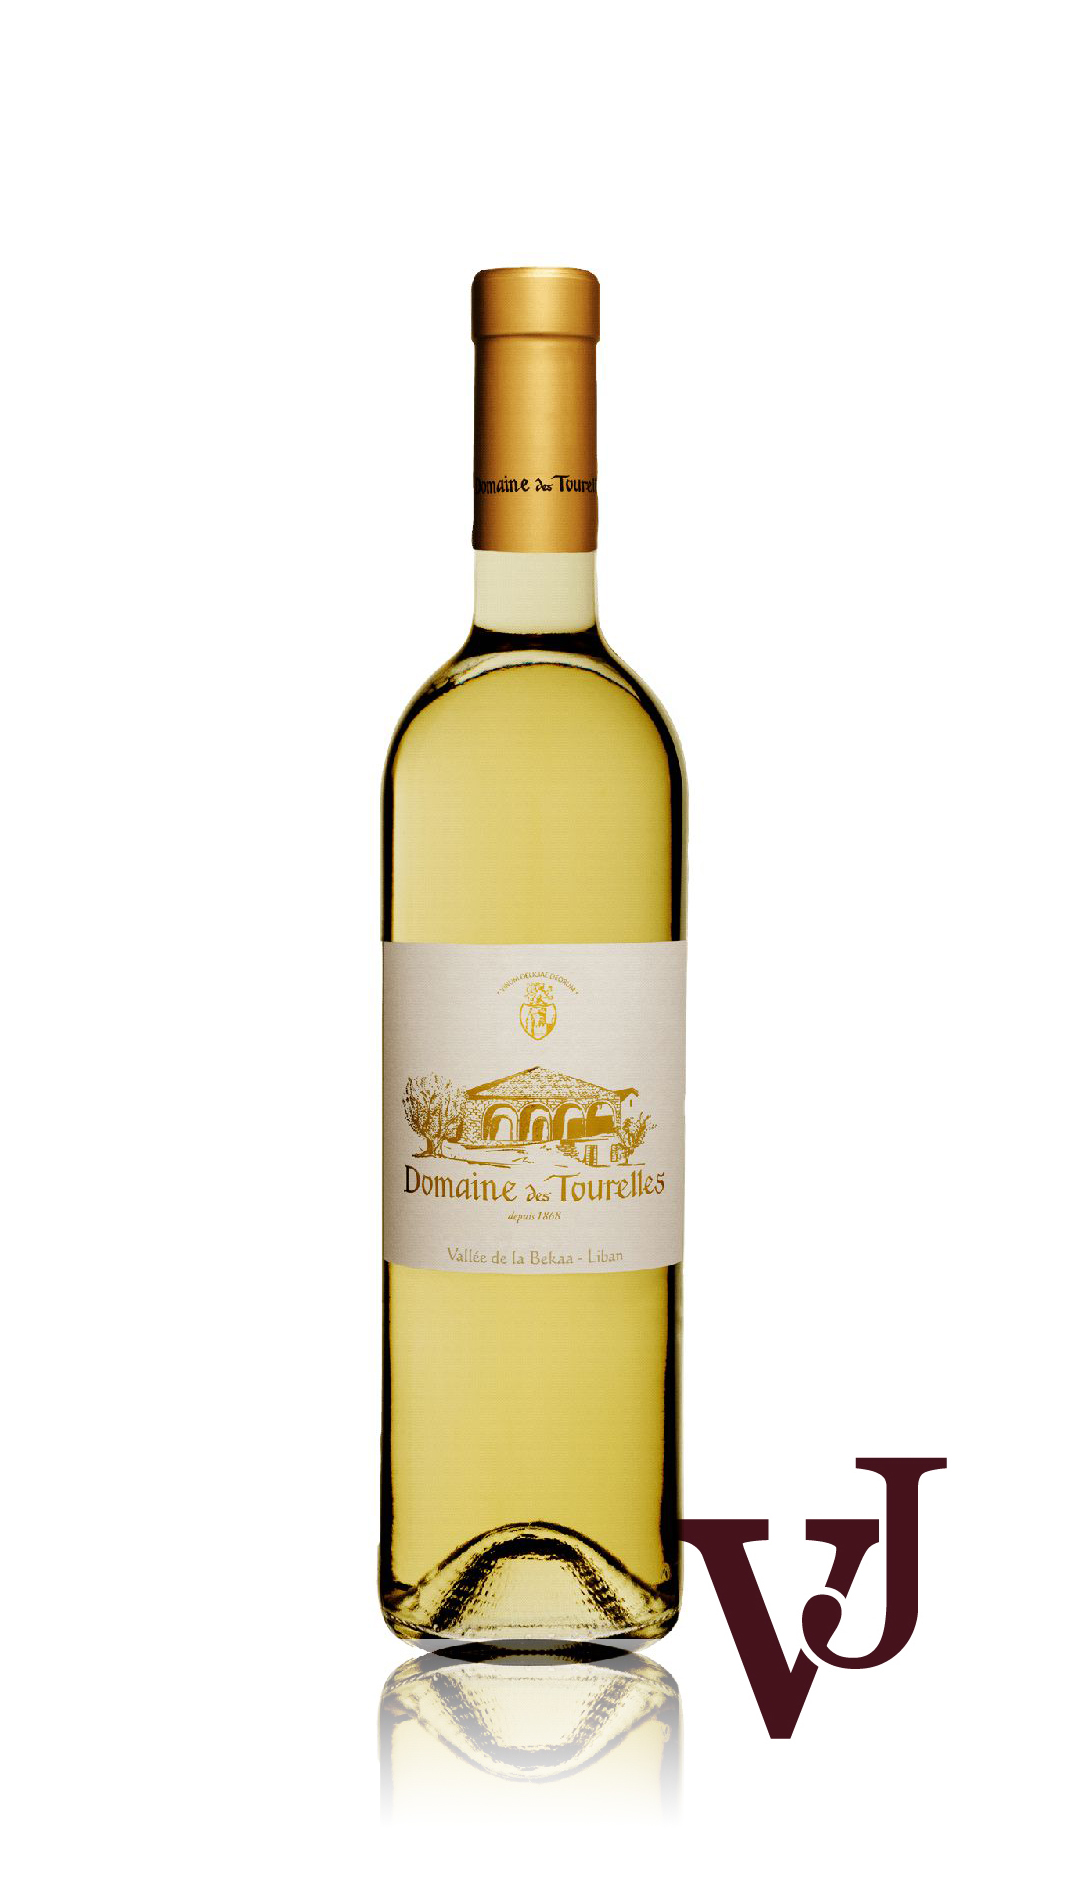 Vitt Vin - Domaine des Tourelles White artikel nummer 7640701 från producenten Domaine des Tourelles från området Libanon